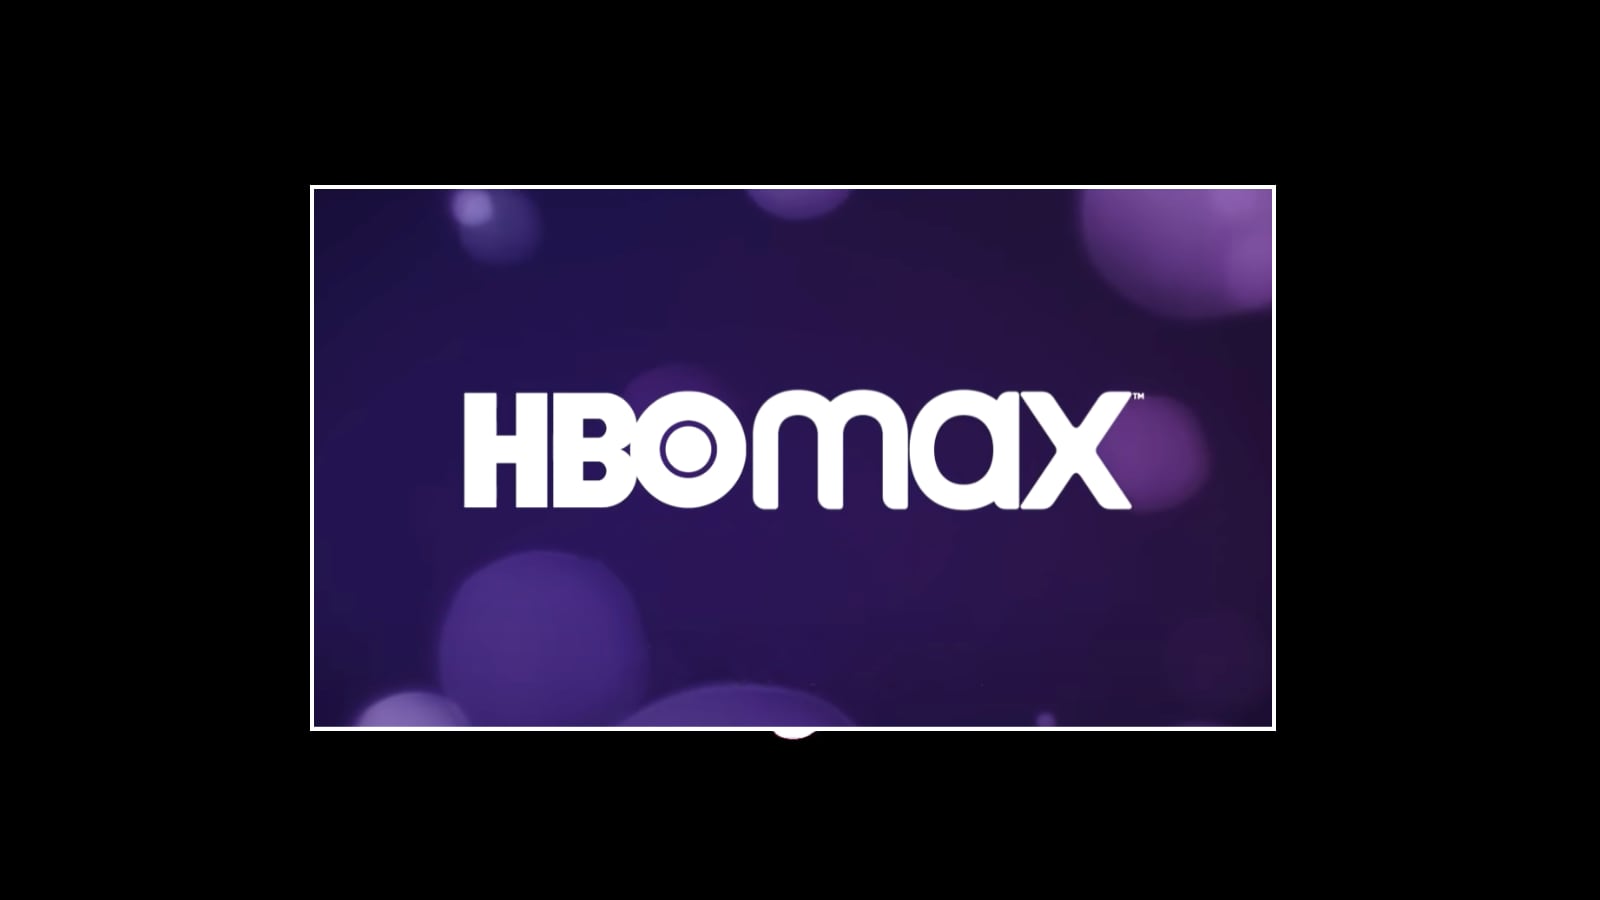 HBO Max i Danmark